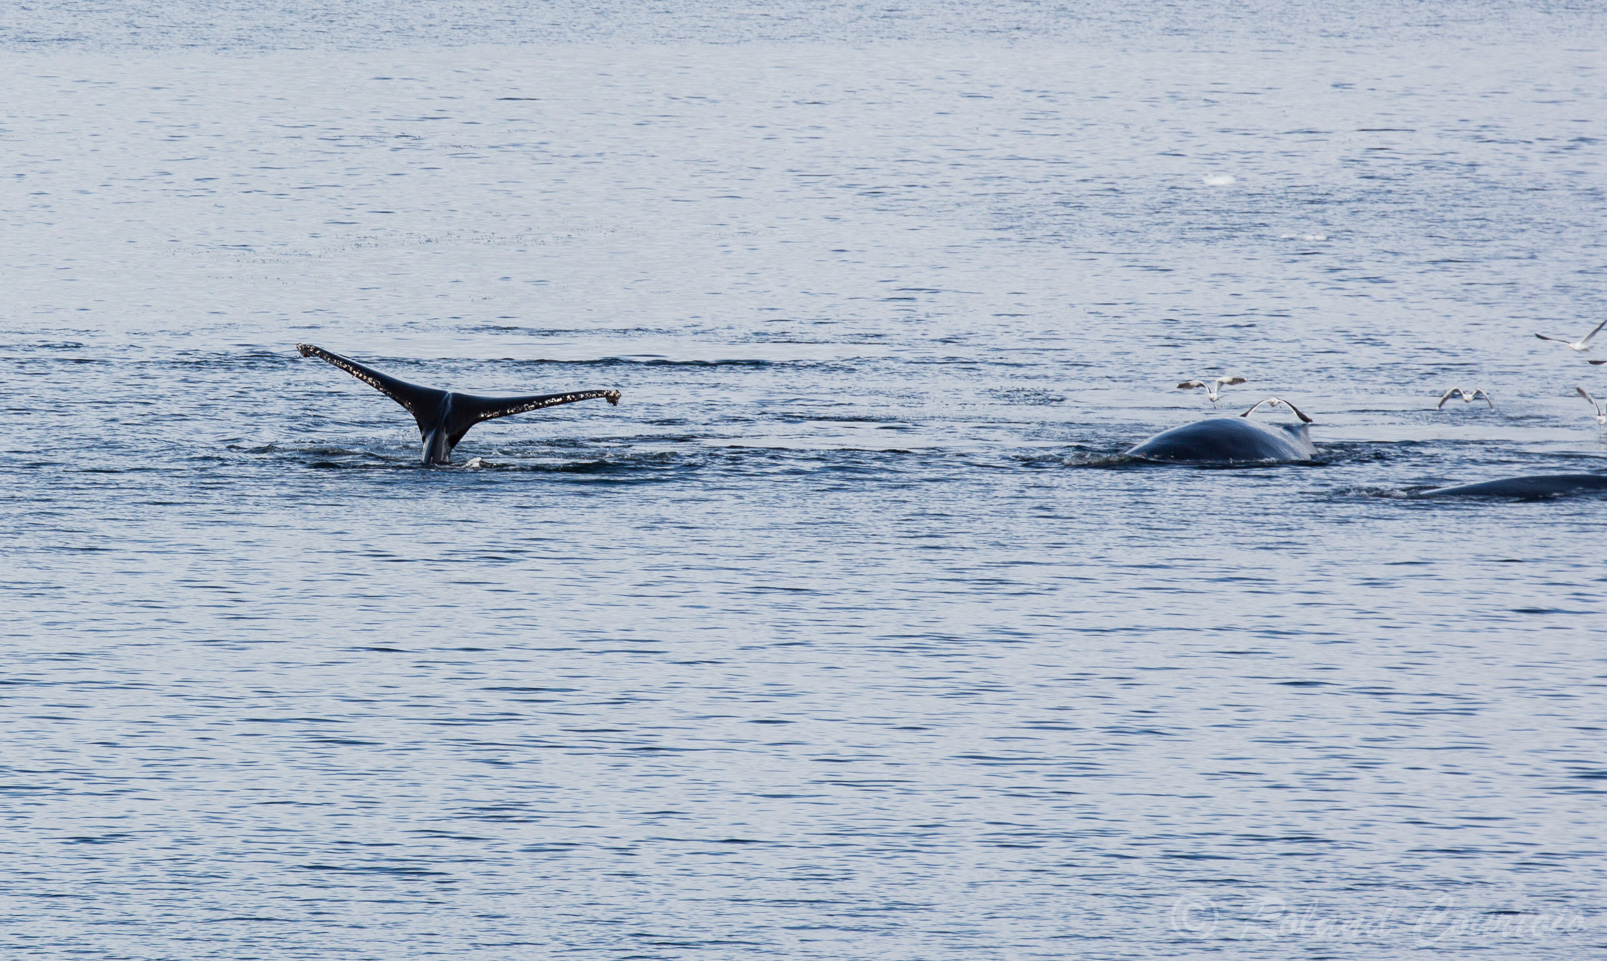 .... sort largement hors de l’eau quand la baleine plonge en profondeur.